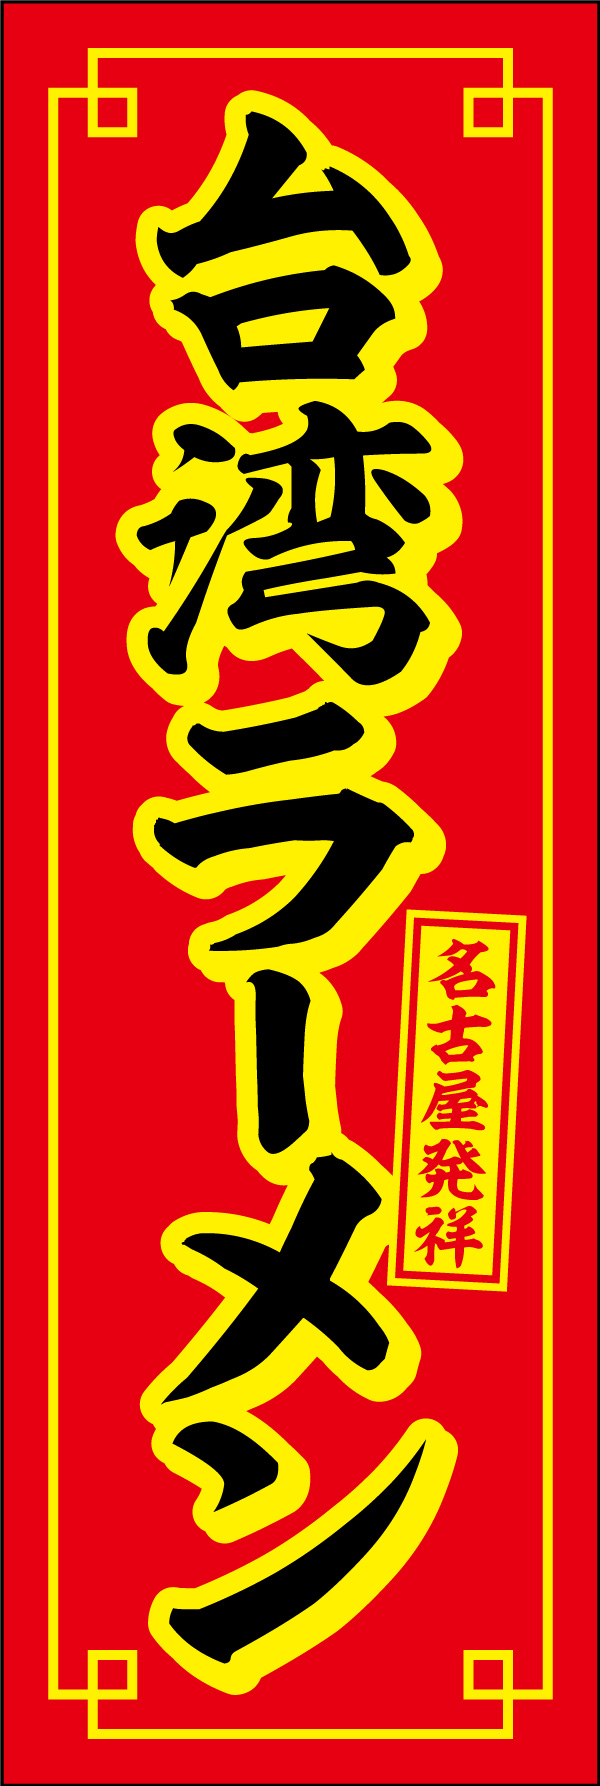 台湾ラーメン 02「台湾ラーメン」ののぼりです。台湾ラーメン発祥の名古屋でよく使用されているカラーリングを意識し、本場の味が楽しめるお店のアイコンとしてデザインしました。(Y.M) 